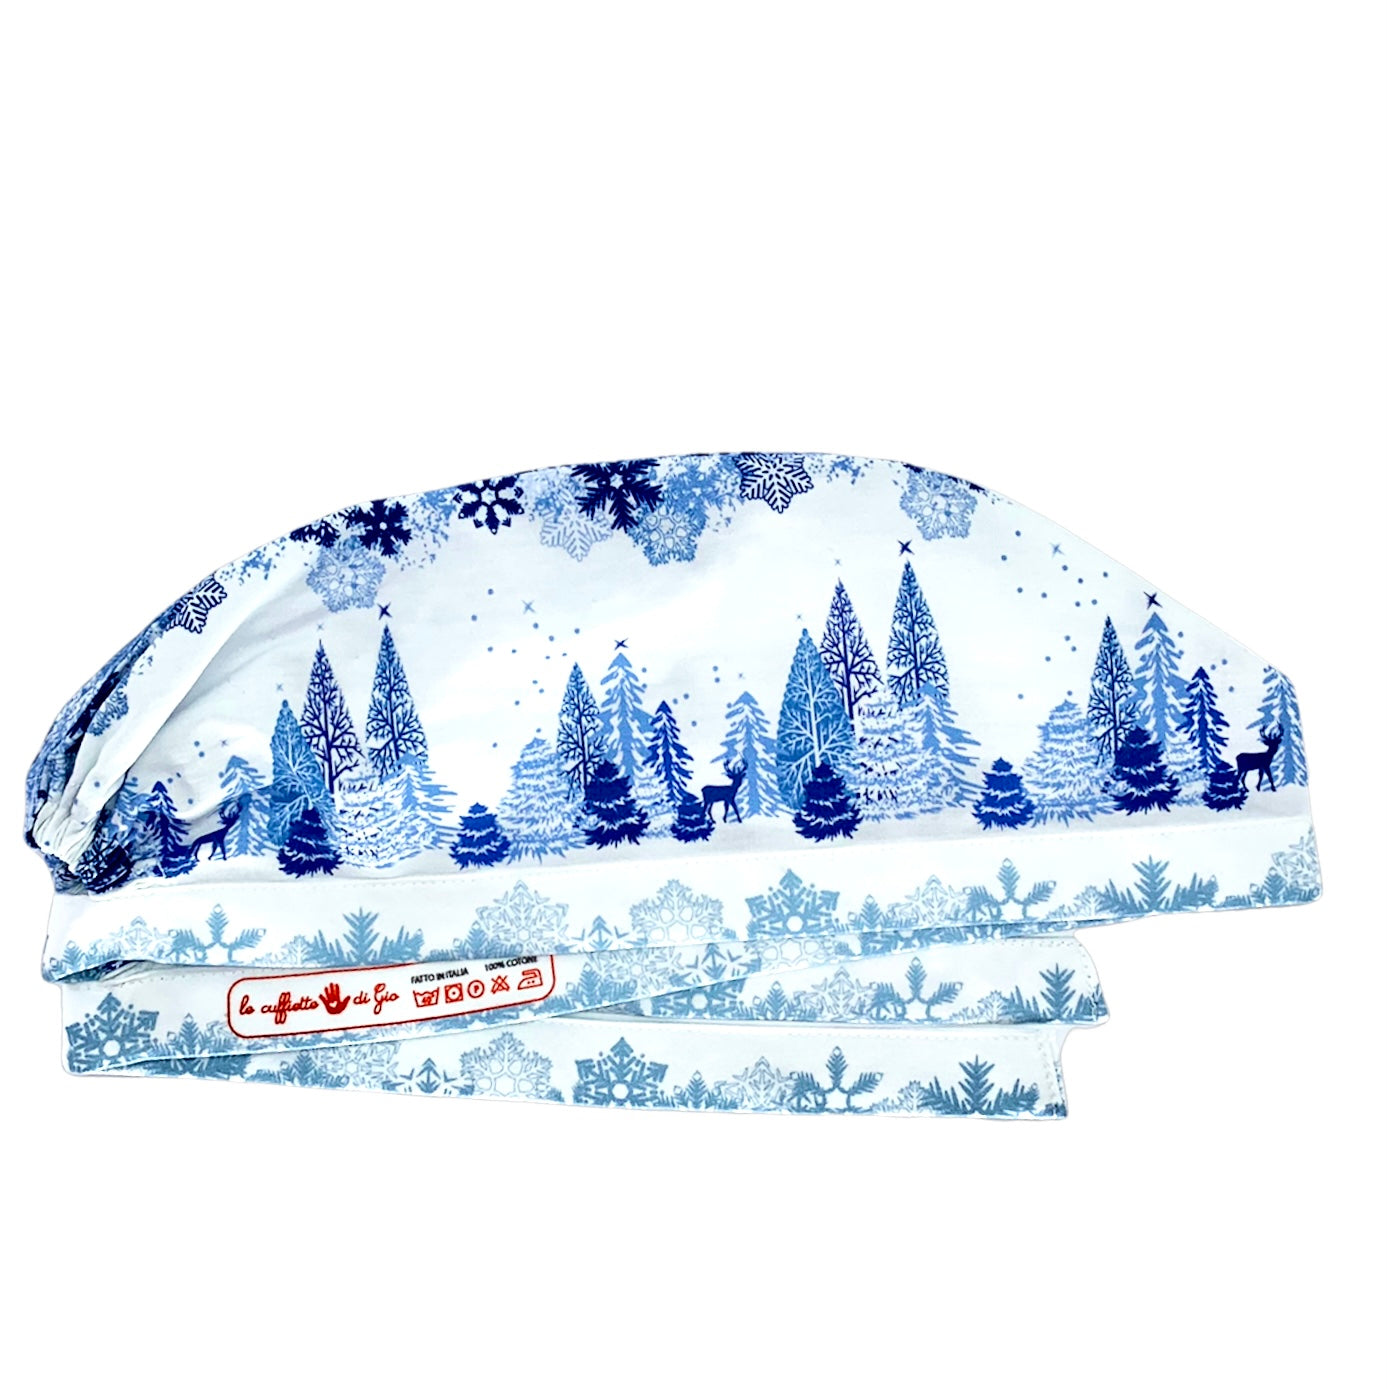 Cuffietta chirurgica bianca con disegni di fiocchi neve in diverse tonalità di blu nella parte superiore einferiore; in mezzo un paesaggio di alberi sotto ai fiocchi di neve con renne che passeggiano indisturbate